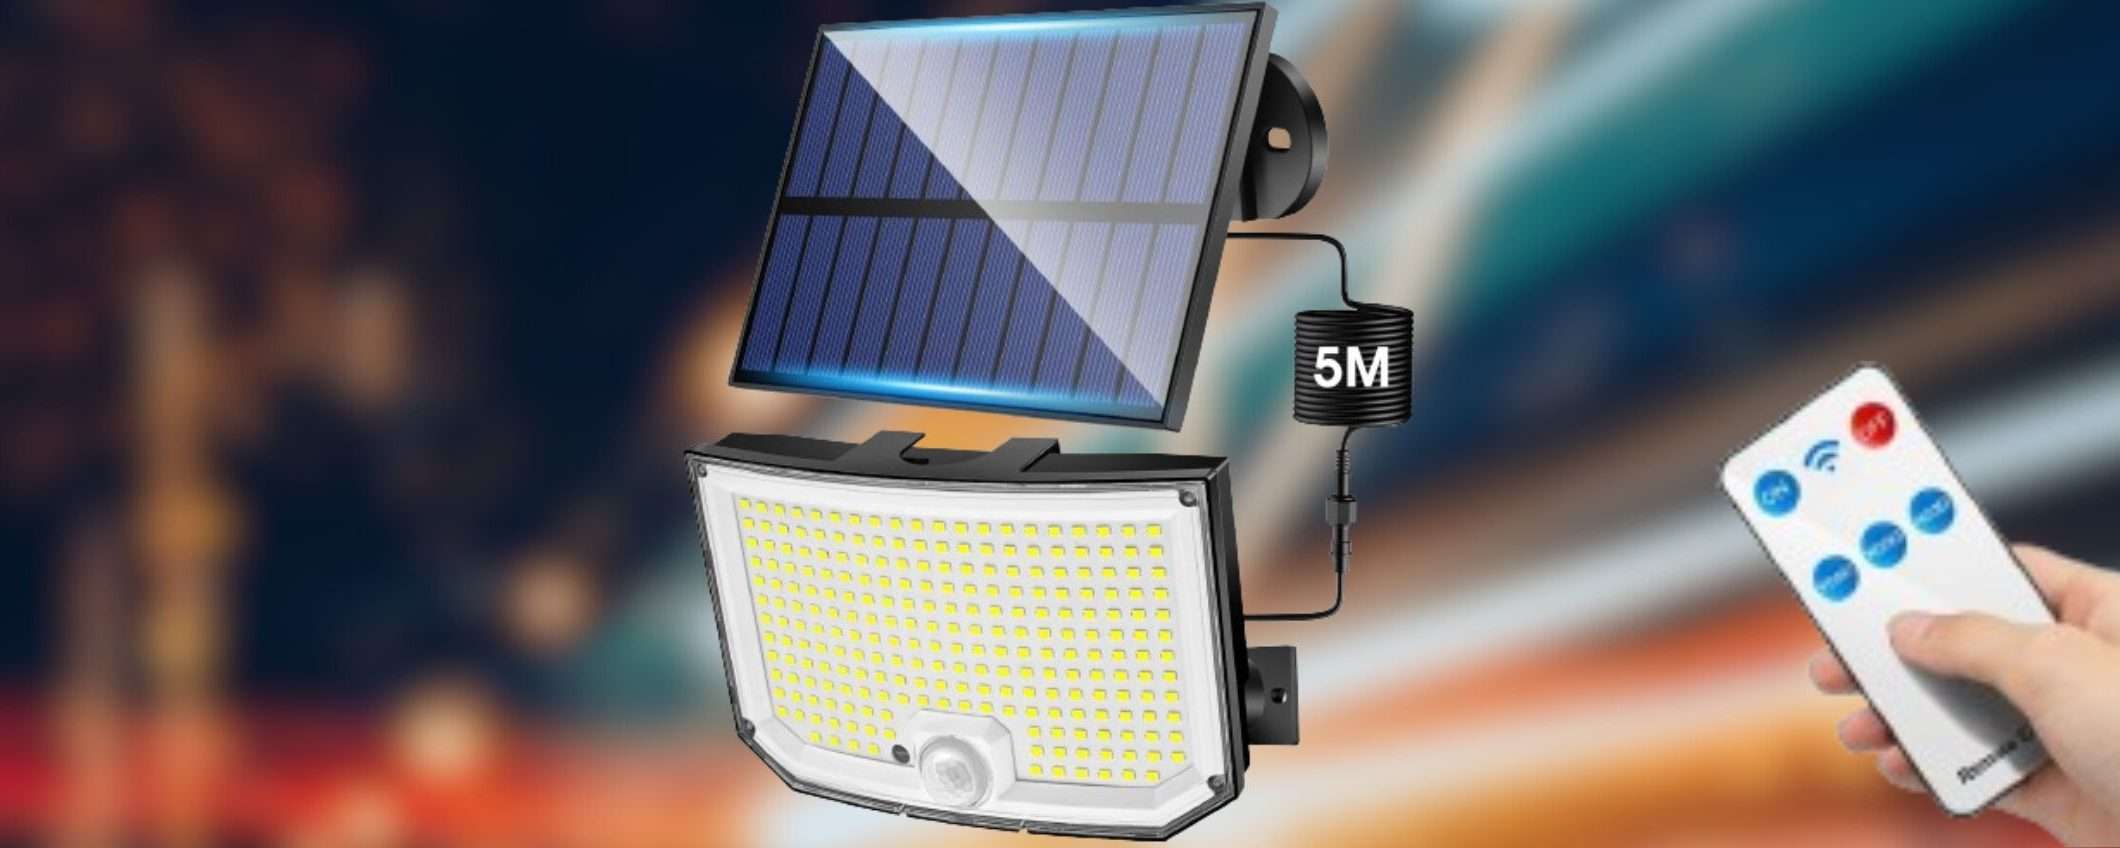 Potentissima luce solare con telecomando a prezzo IMPENSABILE (11€)